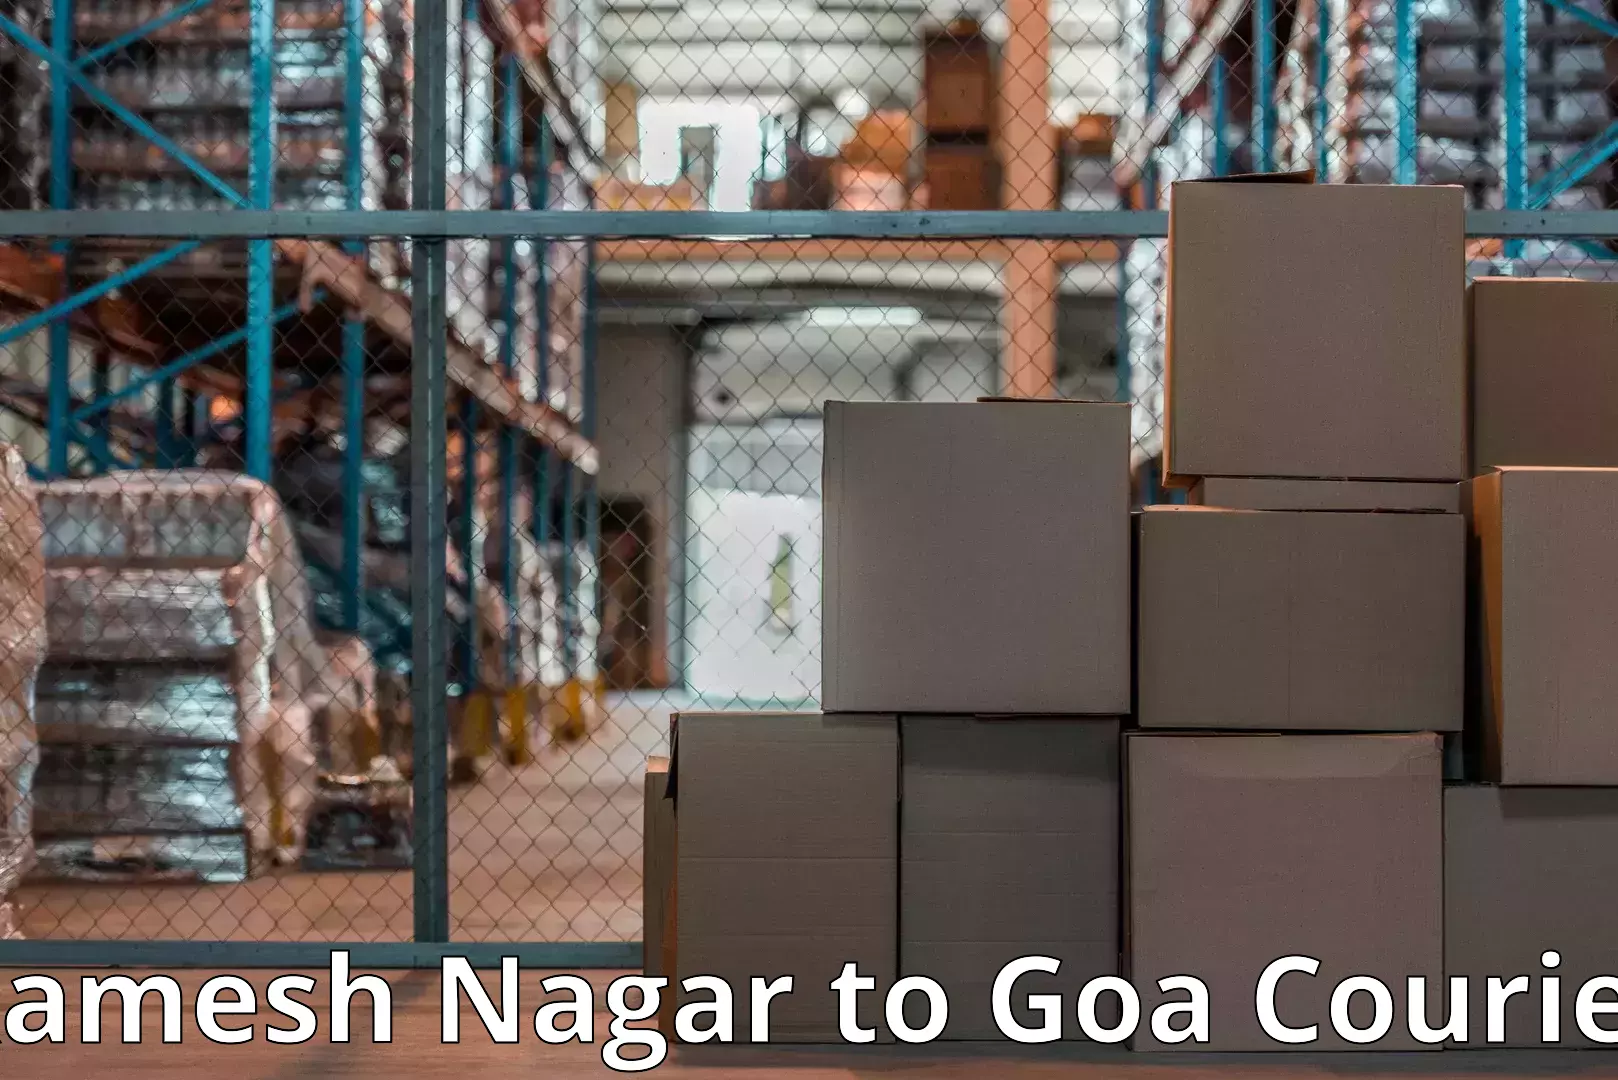 Home goods moving company Ramesh Nagar to Goa